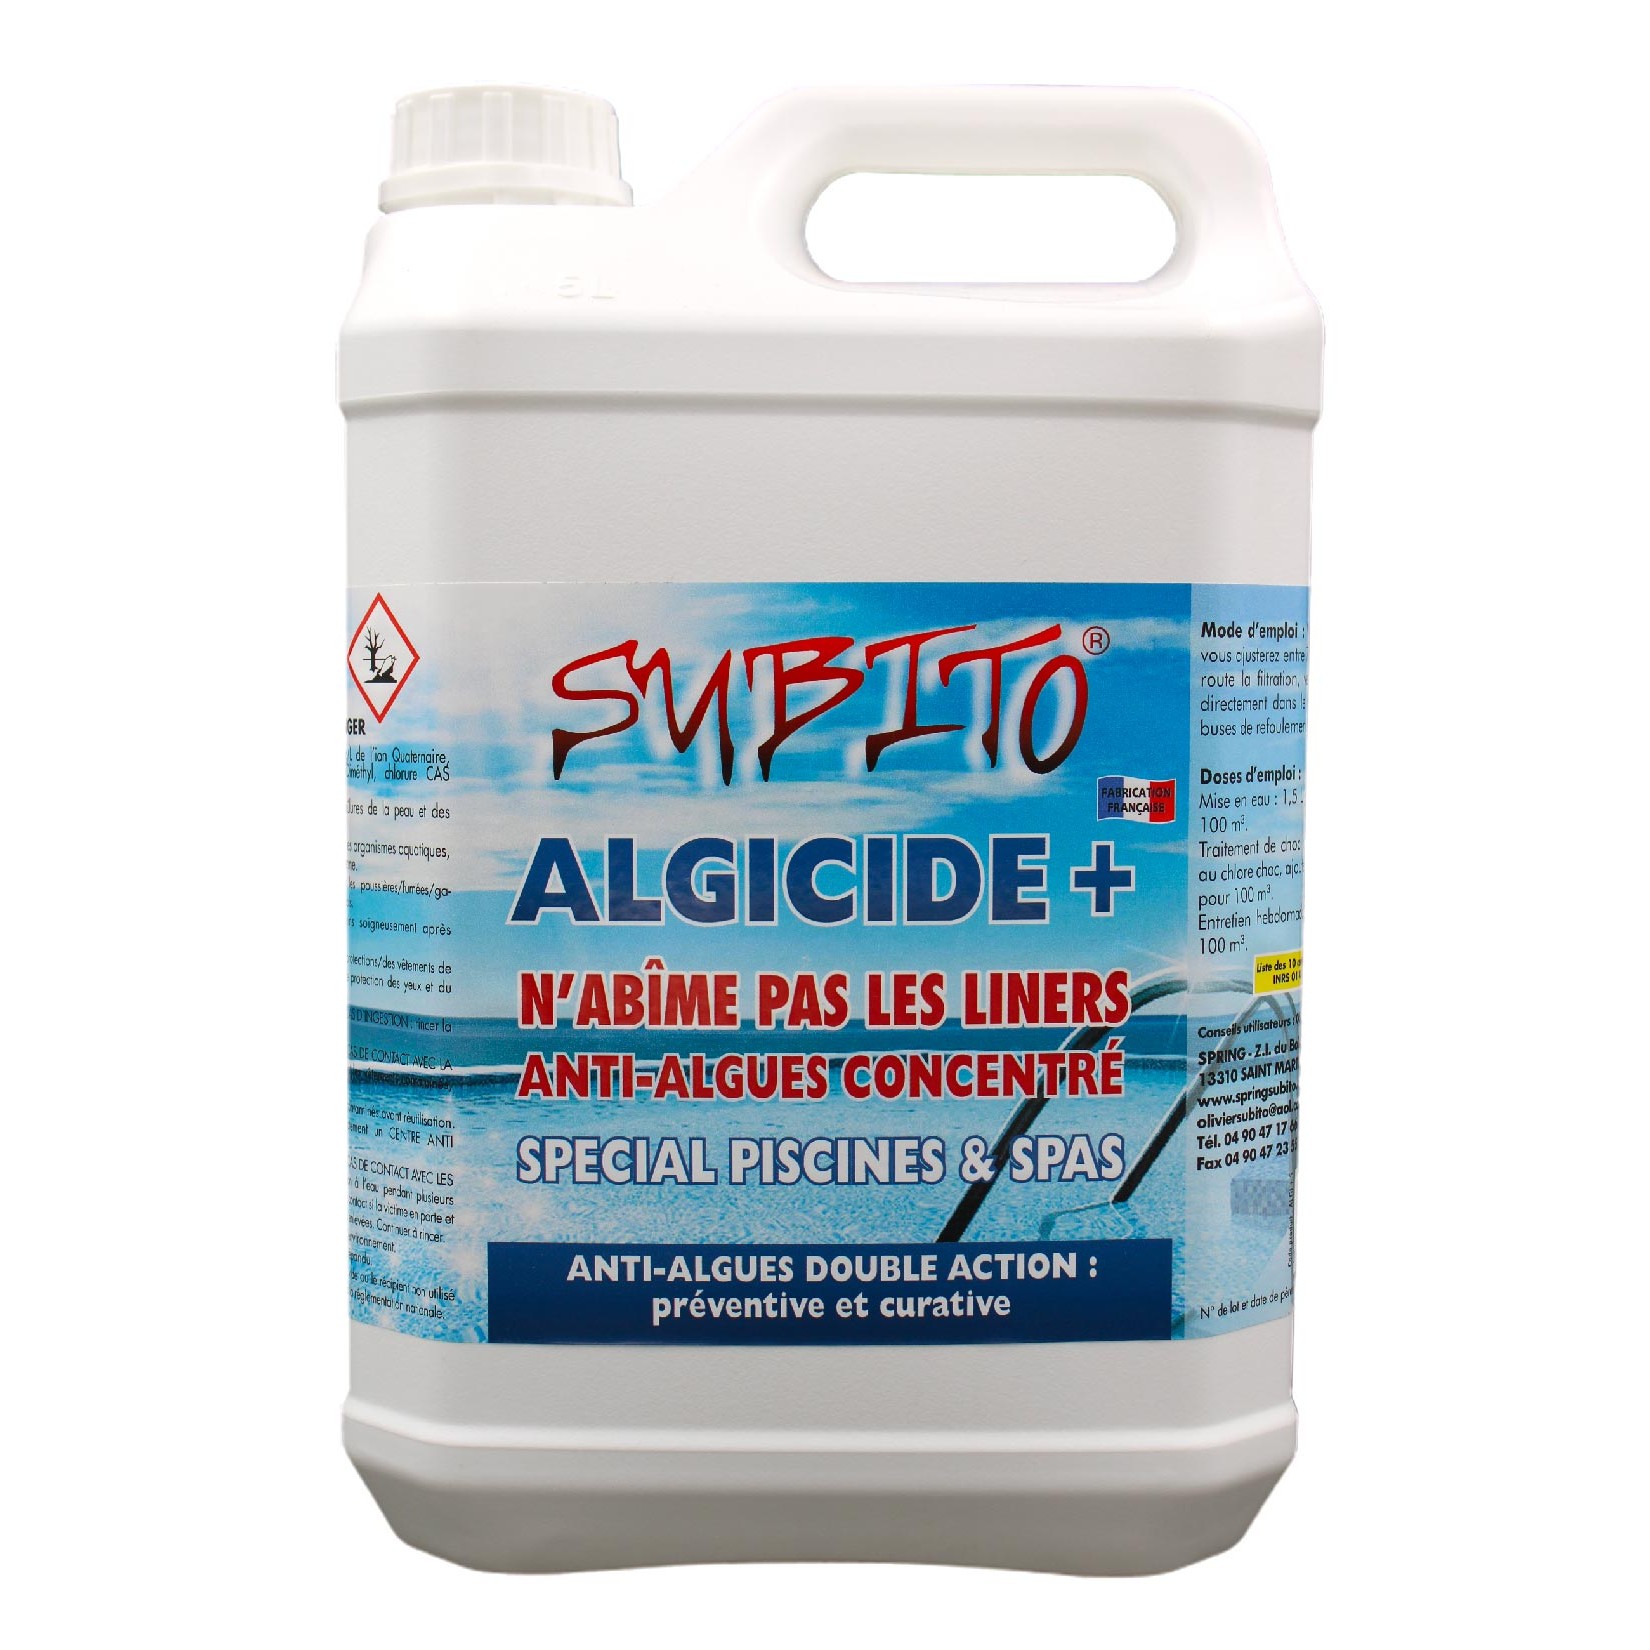 Algicide+ Anti-algues concentré spécial Piscines et Spas de Subito | Insecticide Antinuisible Qualité Professionnelle